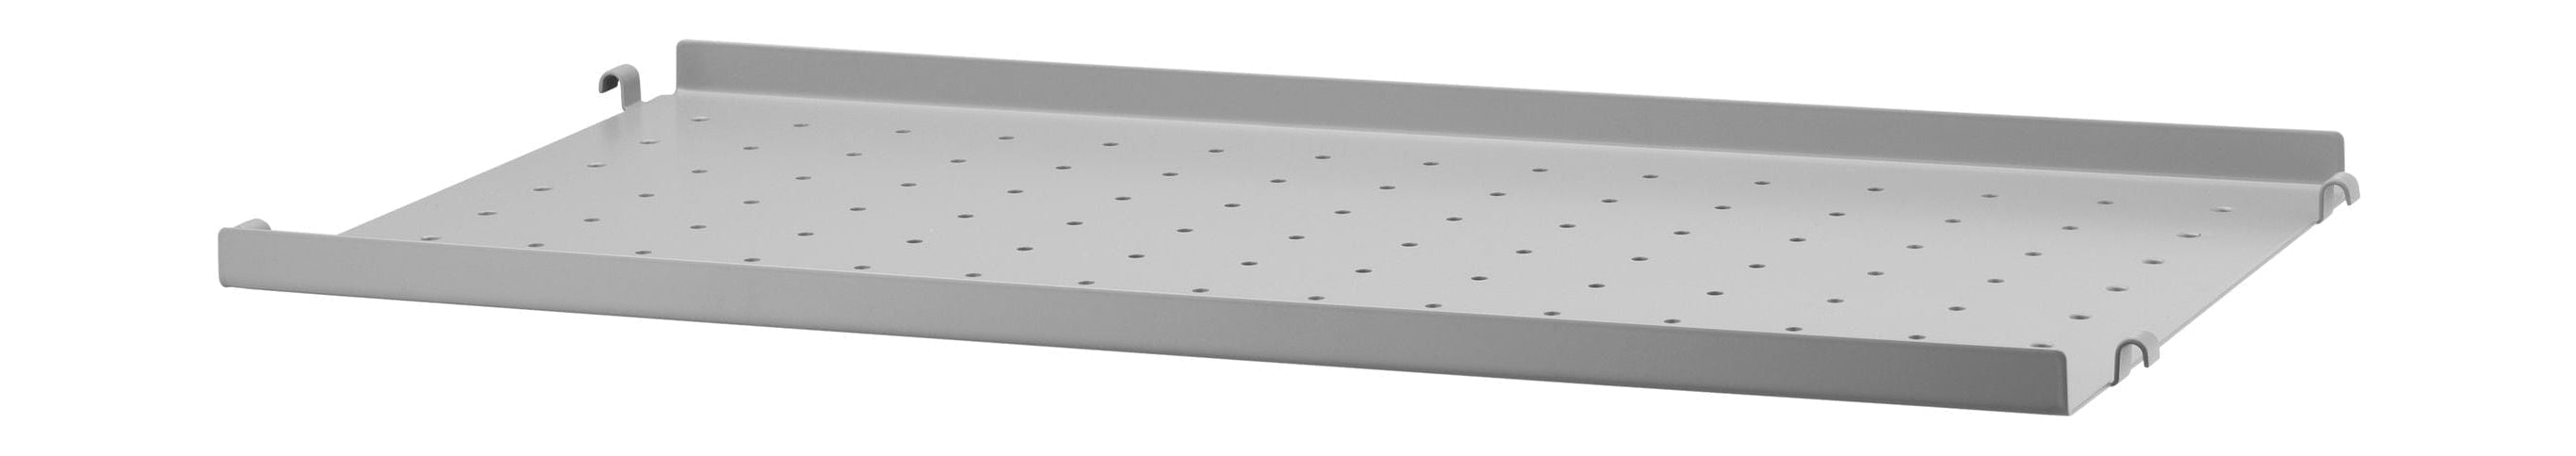 Sistema de muebles de cadena Estante de metal con borde bajo 30x58 cm, gris